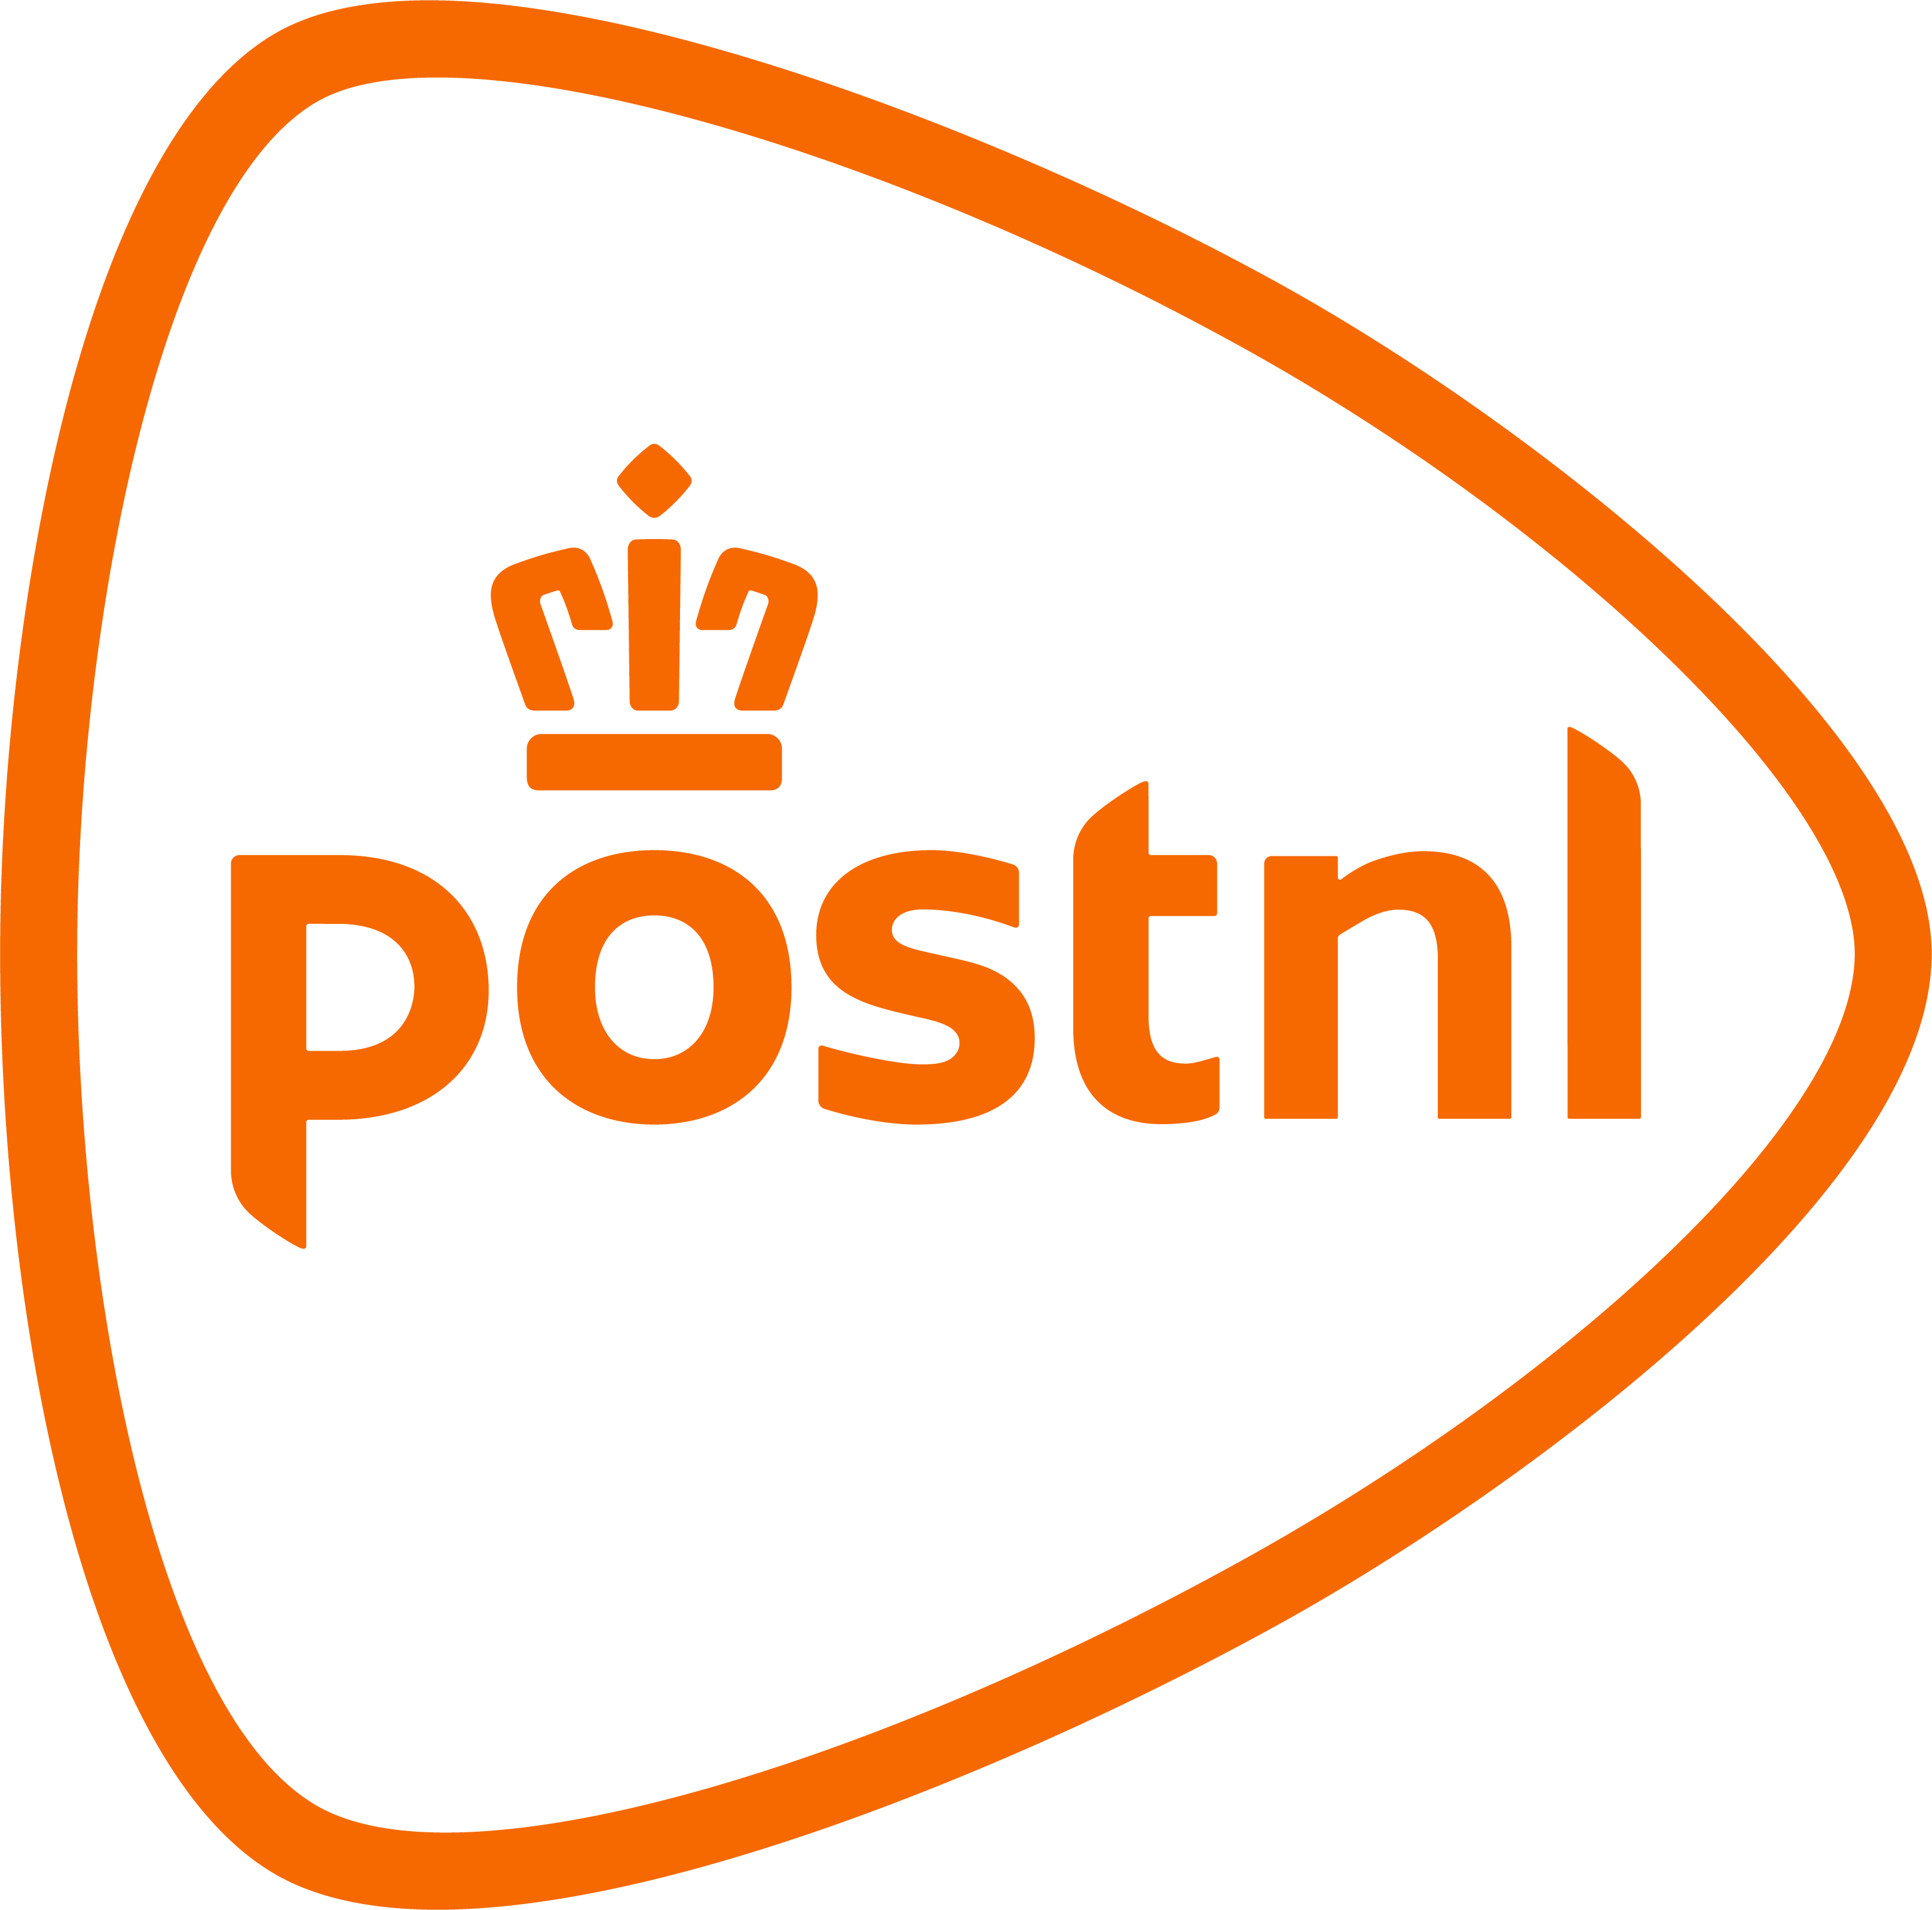 PostNL-logo